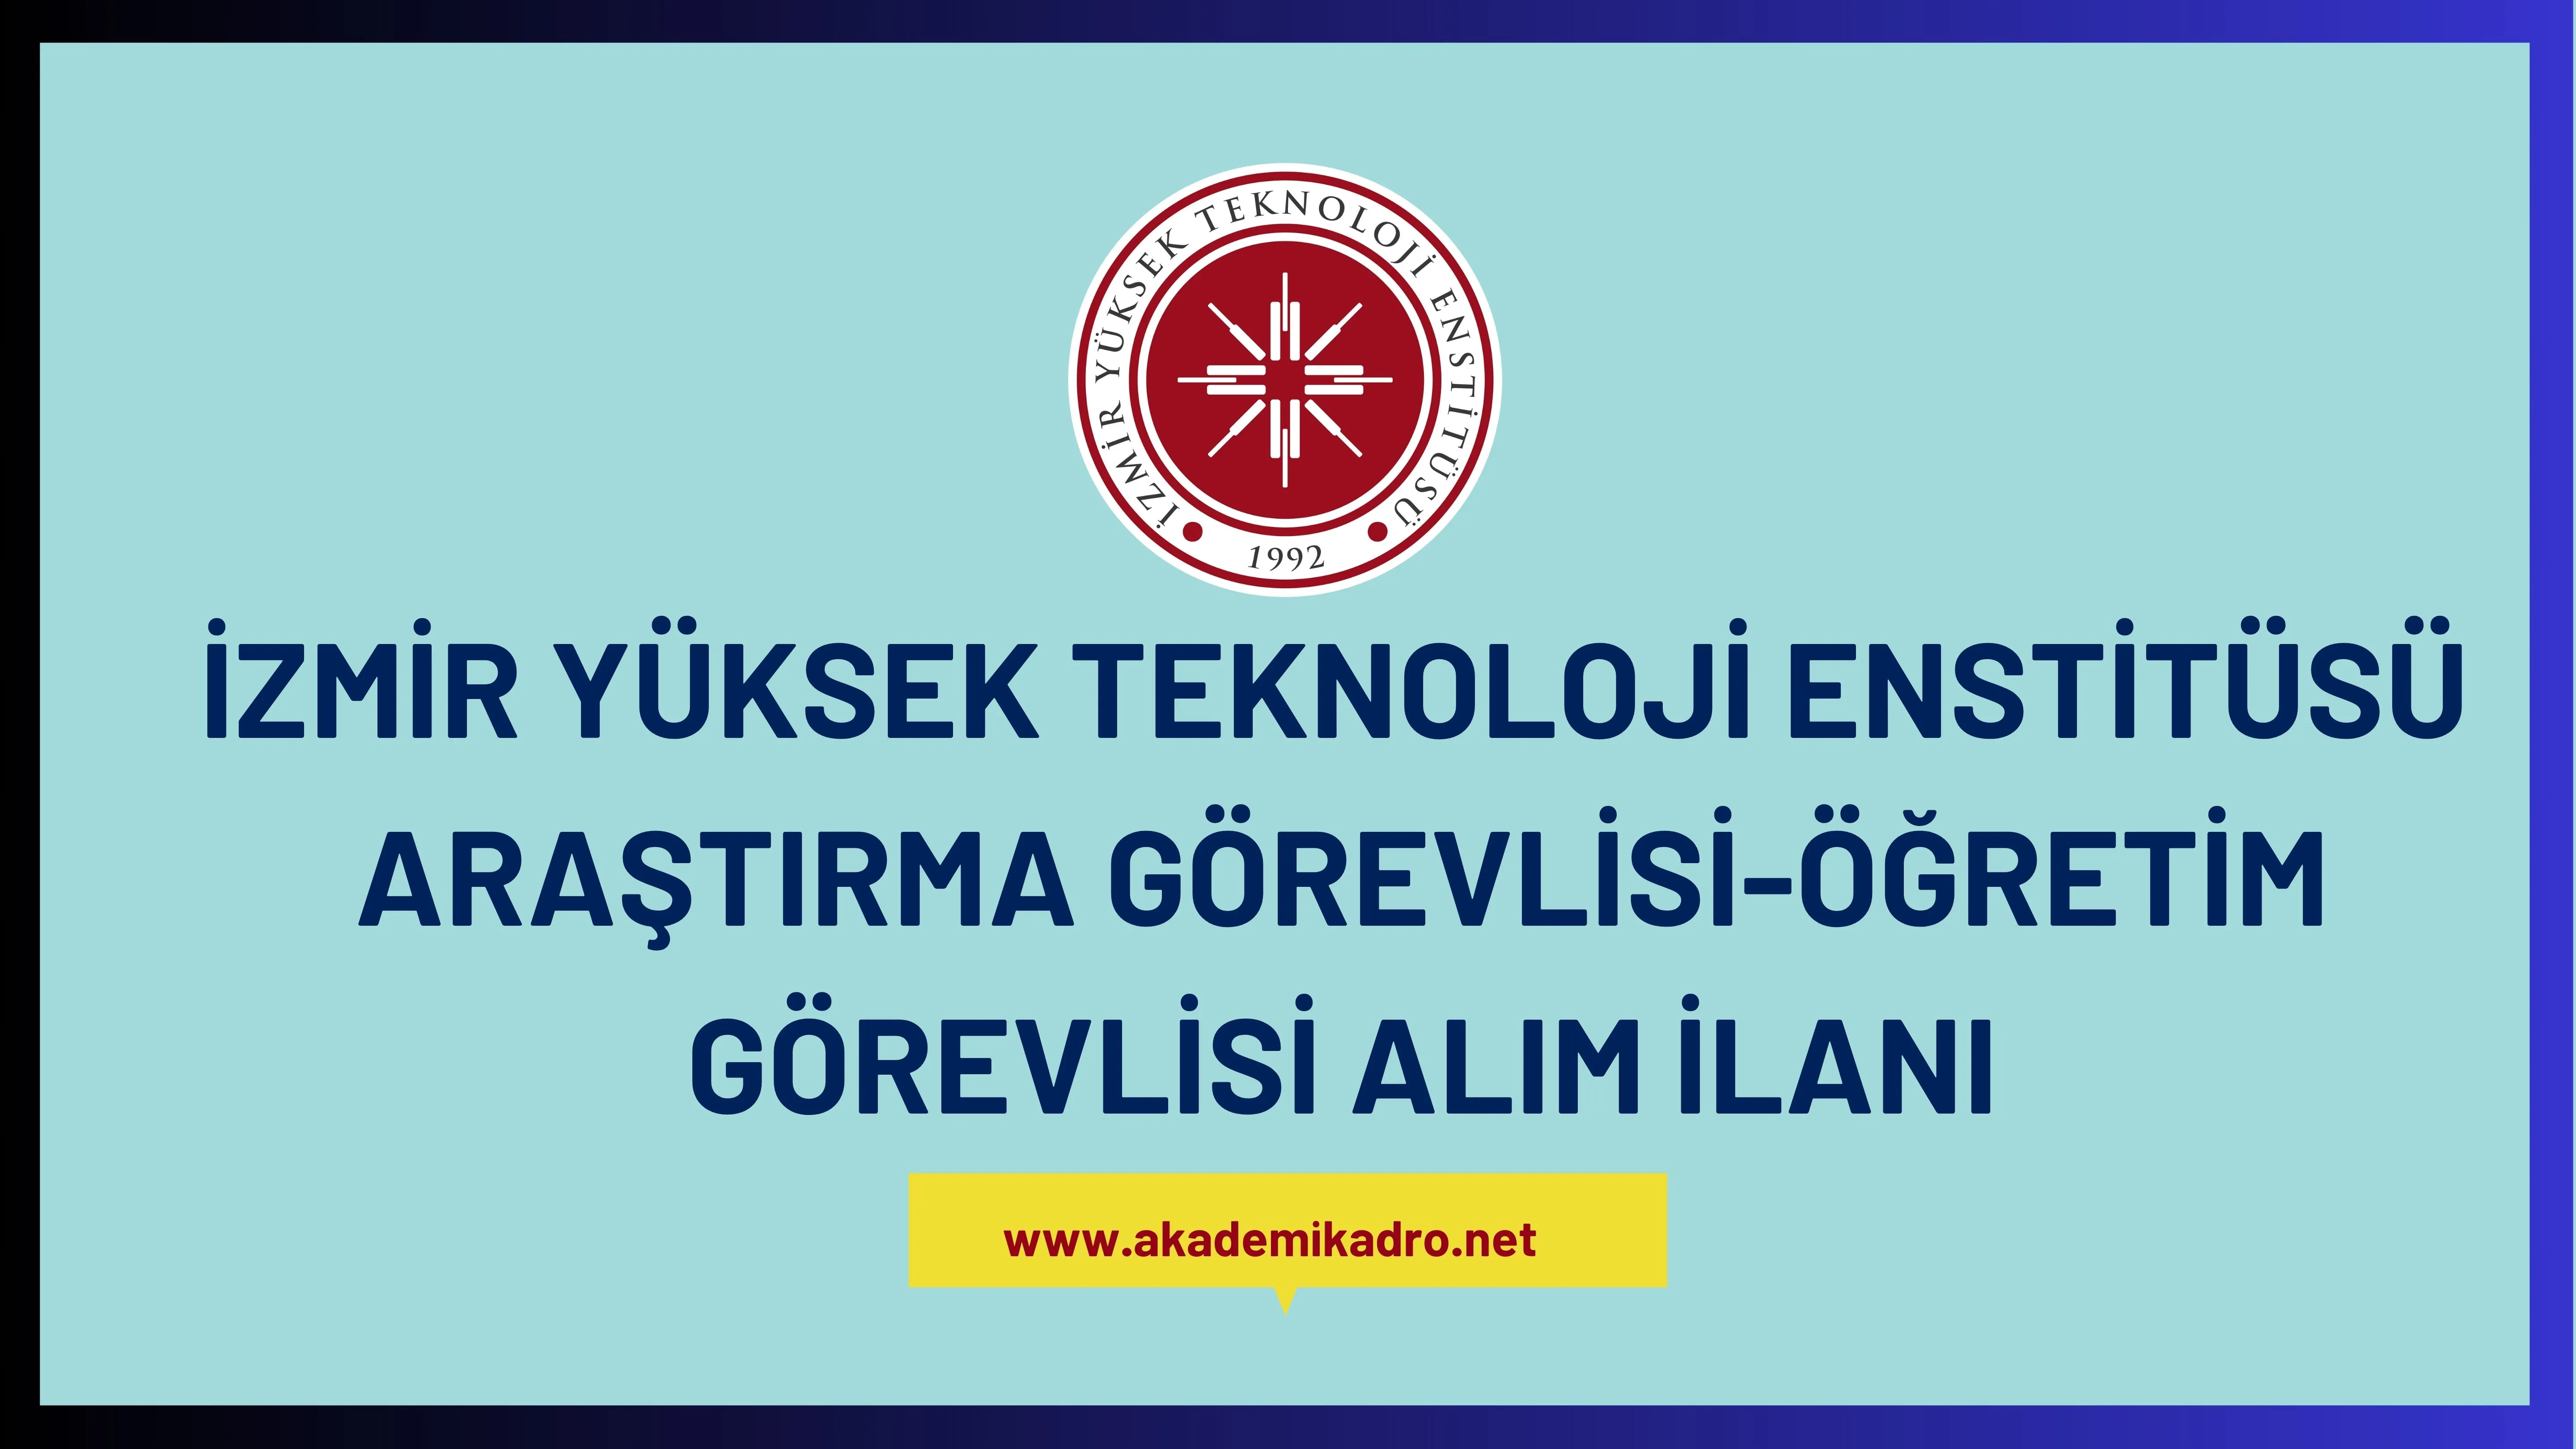 İzmir Yüksek Teknoloji Enstitüsü 28 Araştırma görevlisi ve 8 Öğretim görevlisi alacak.